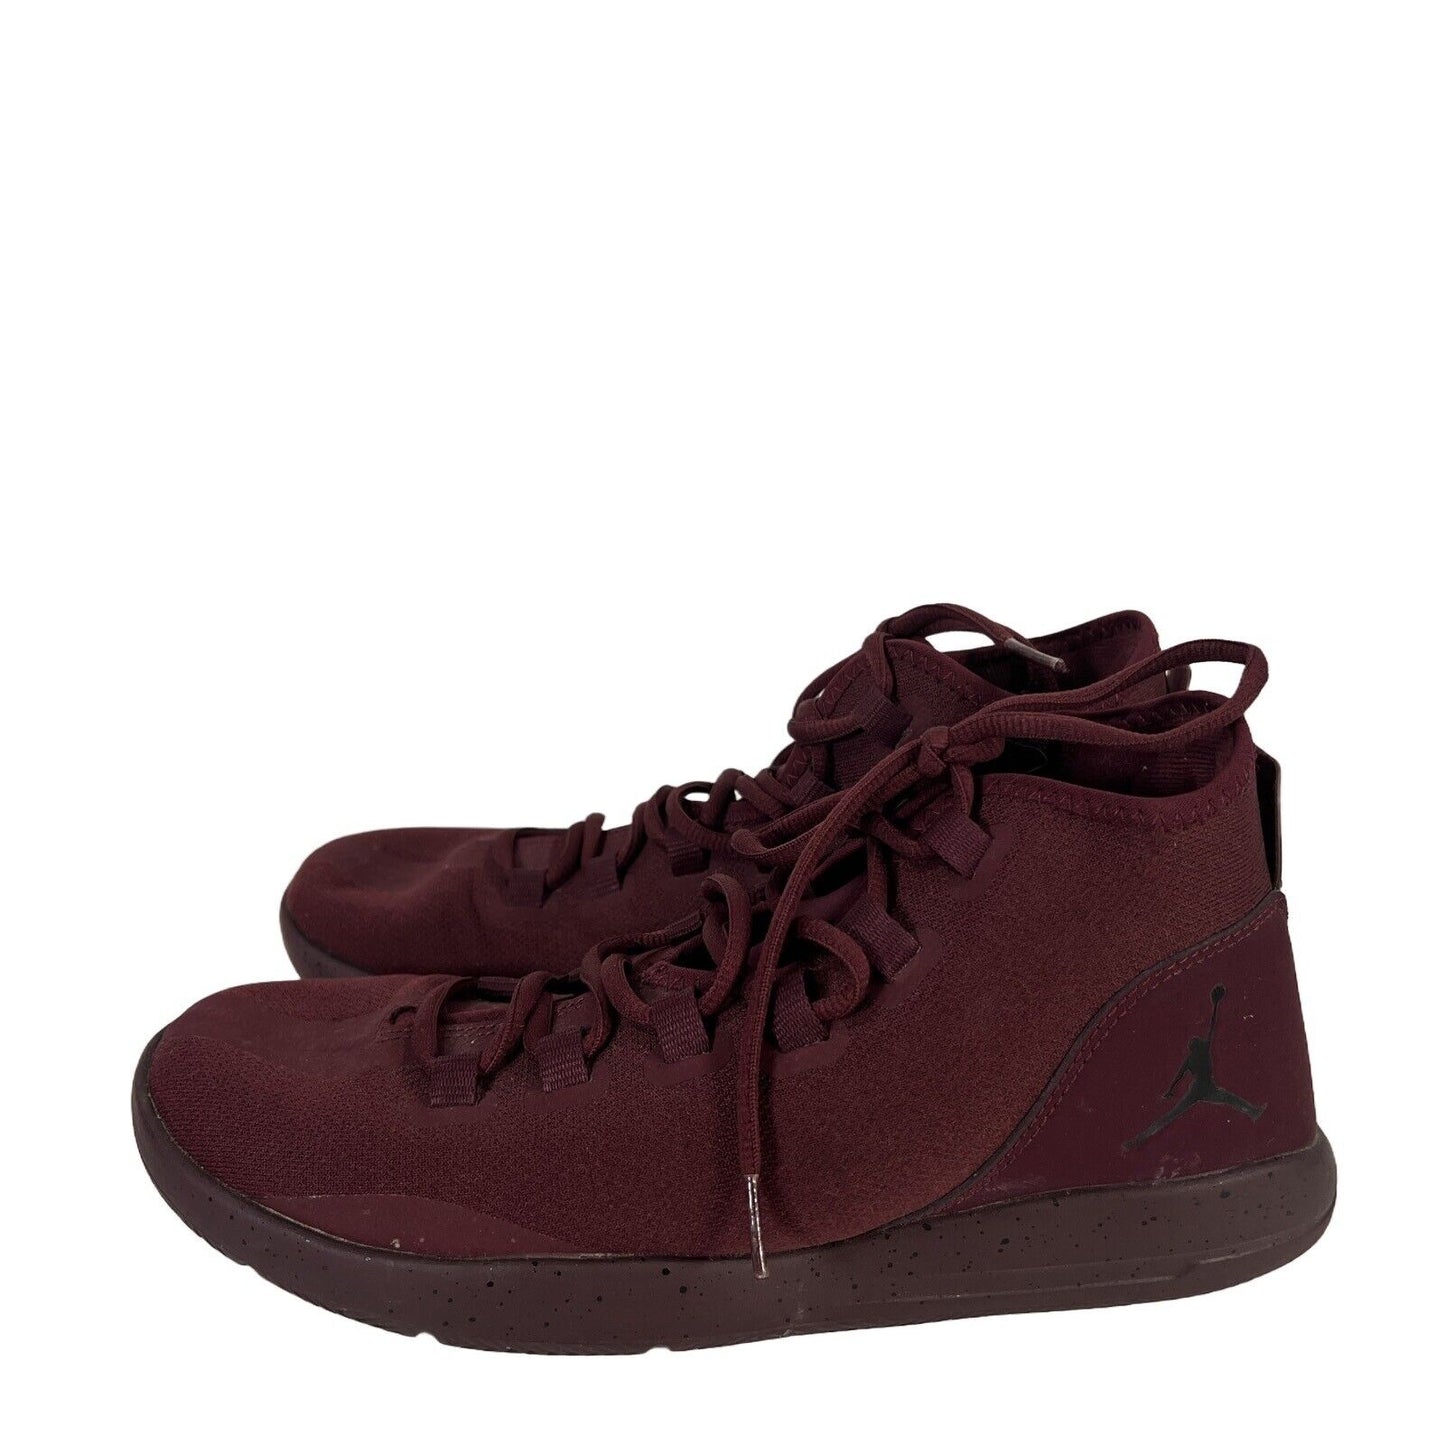 Air Jordan Hombres Night Maroon Red Reveal Zapatillas Zapatos - 9.5